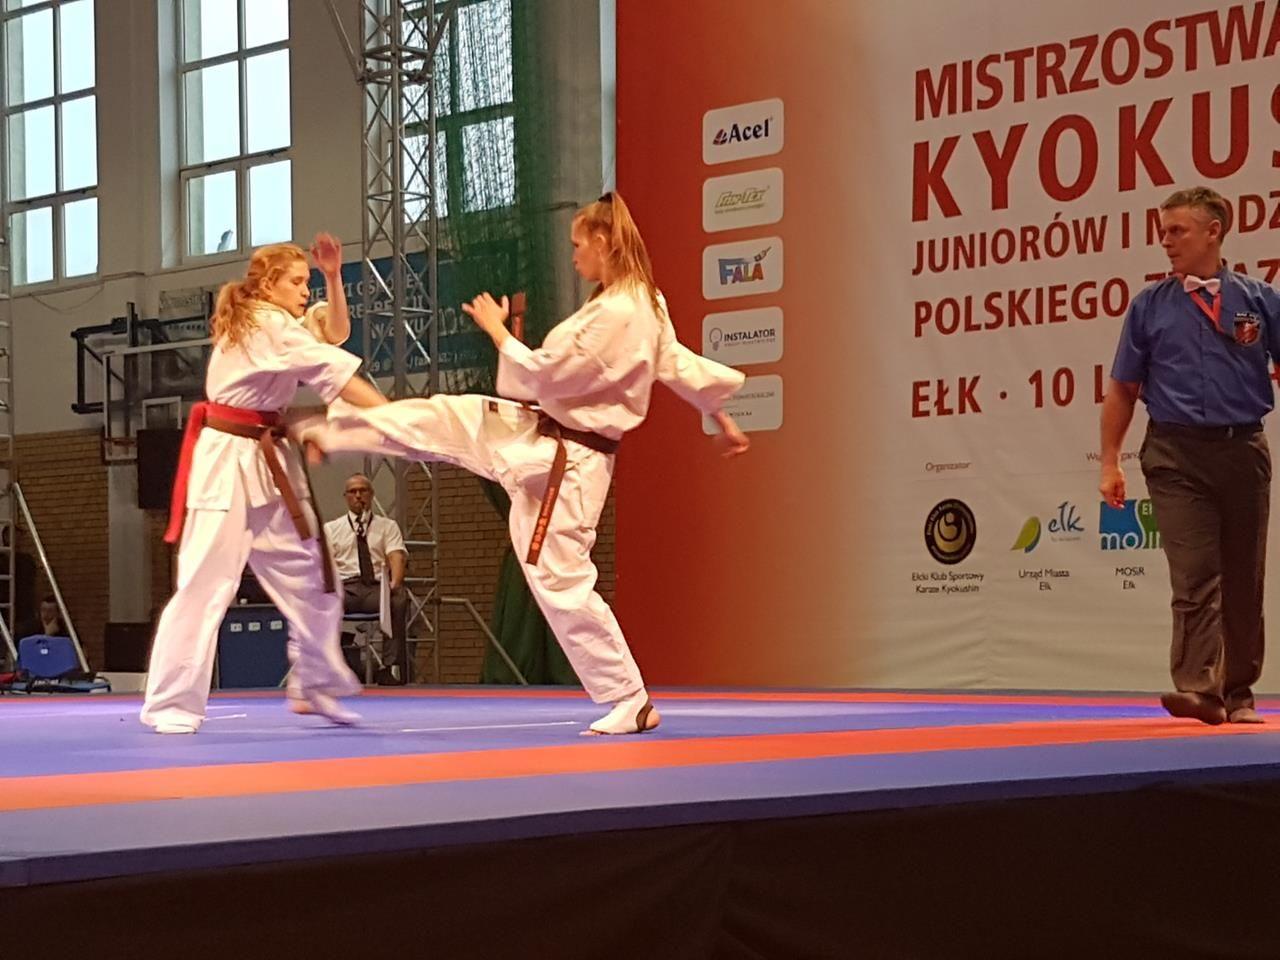 Zdj. nr. 5. Mistrzostwa Polski z medalami